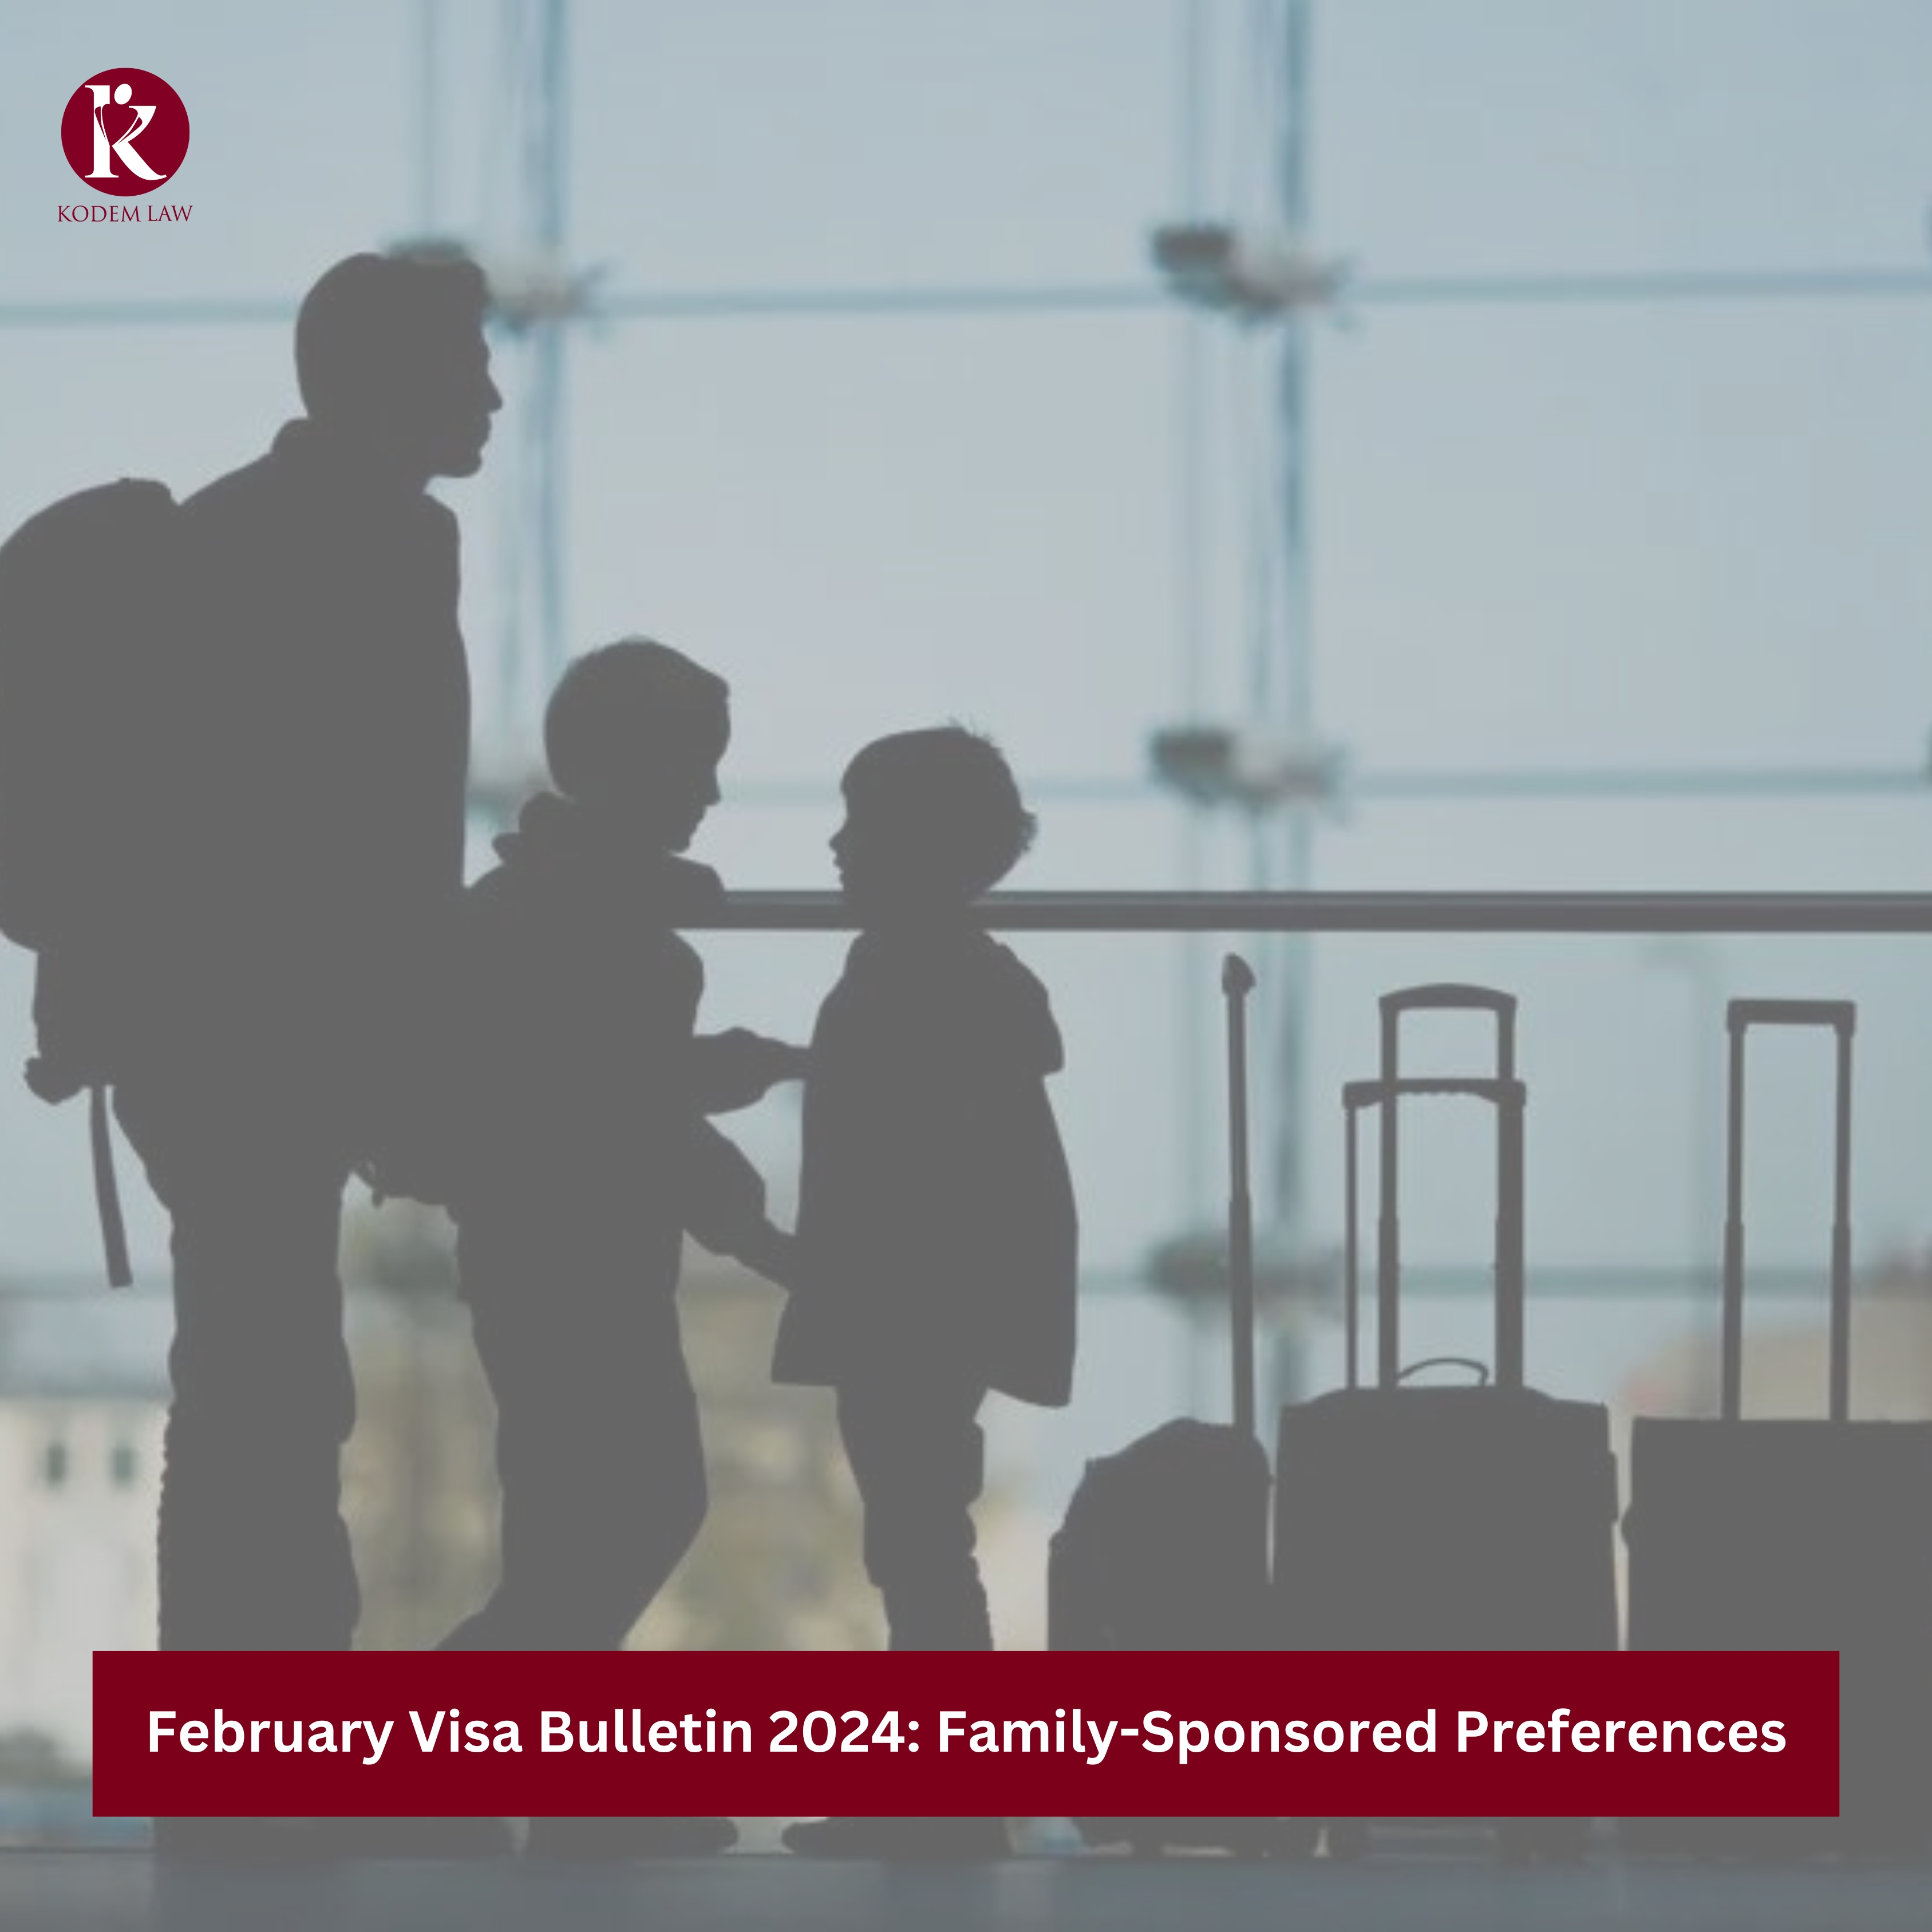 February Visa Bulletin 2024 Family-Sponsored Preferences